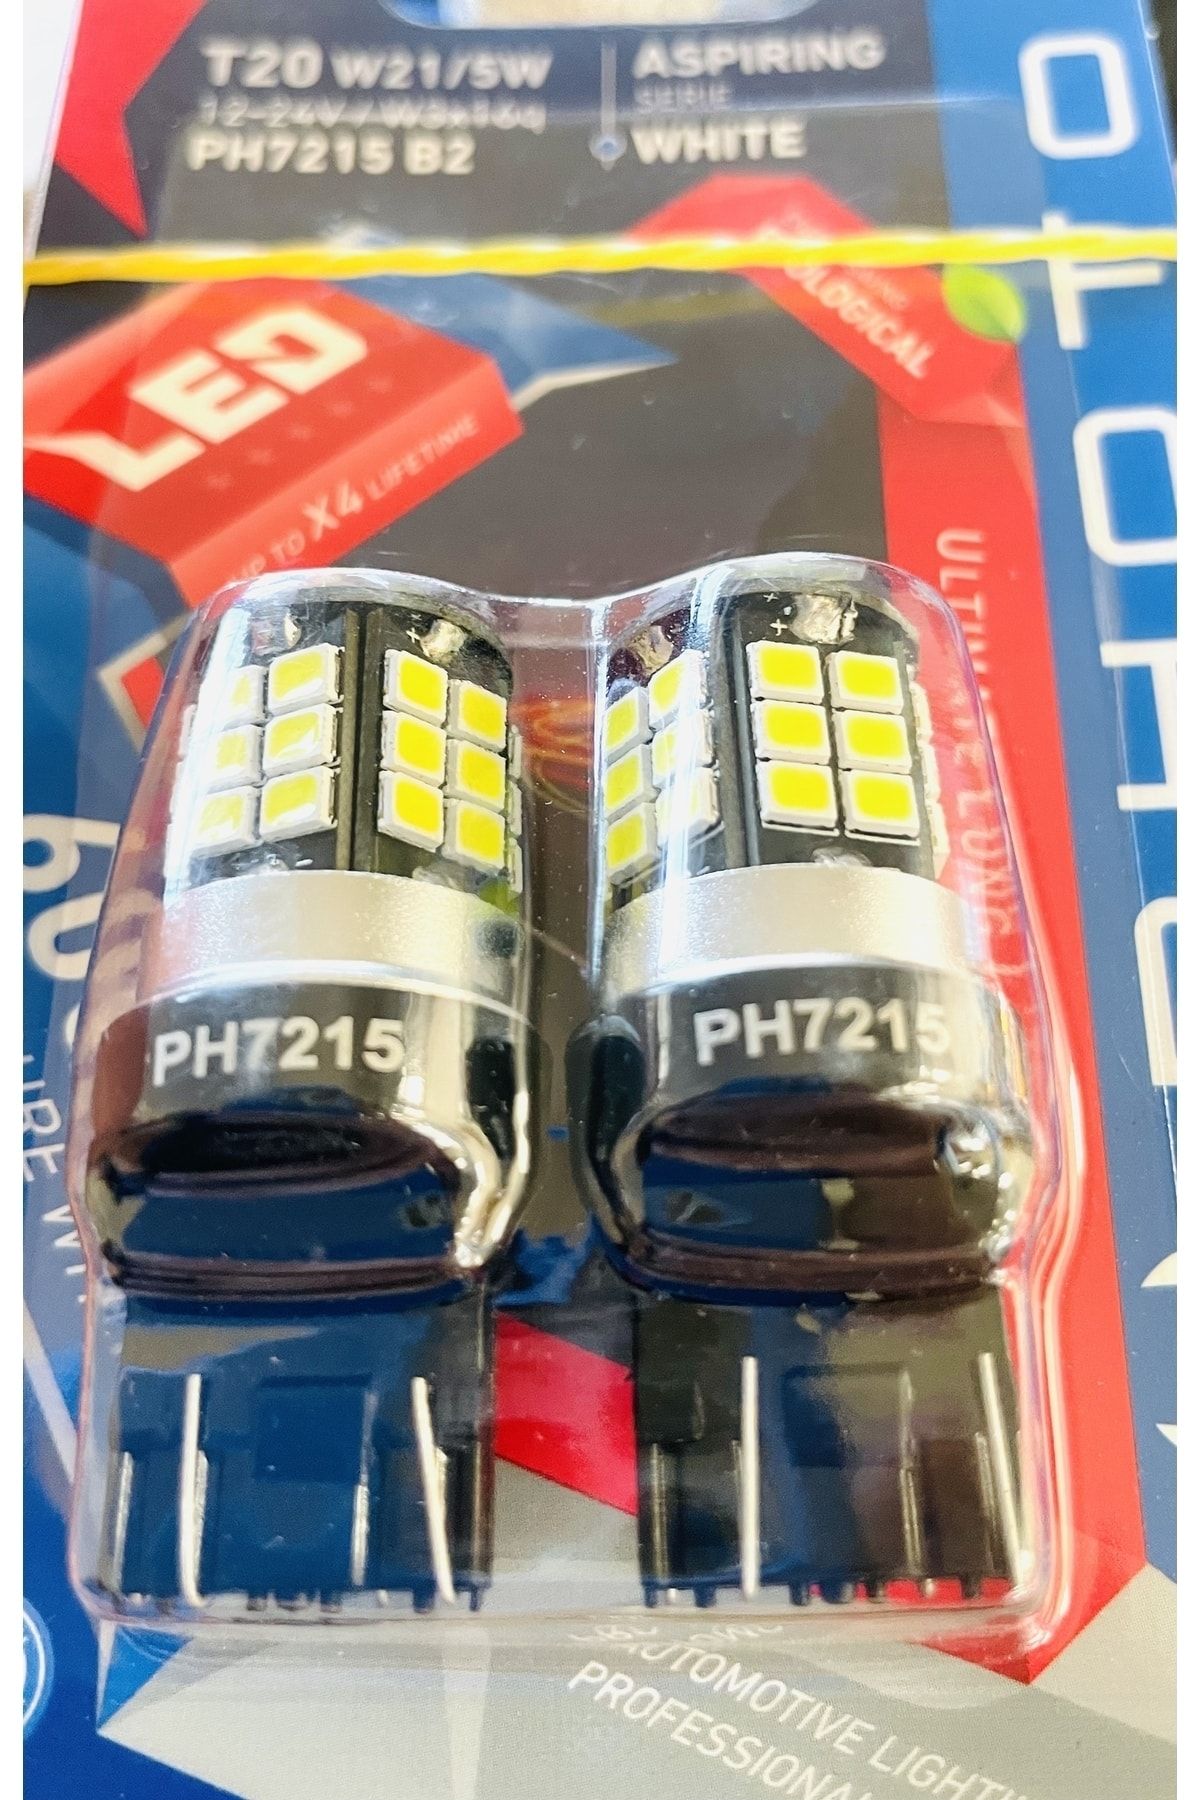 Photon T20 21/5w Led Çift Devre Can-bus Ph7215